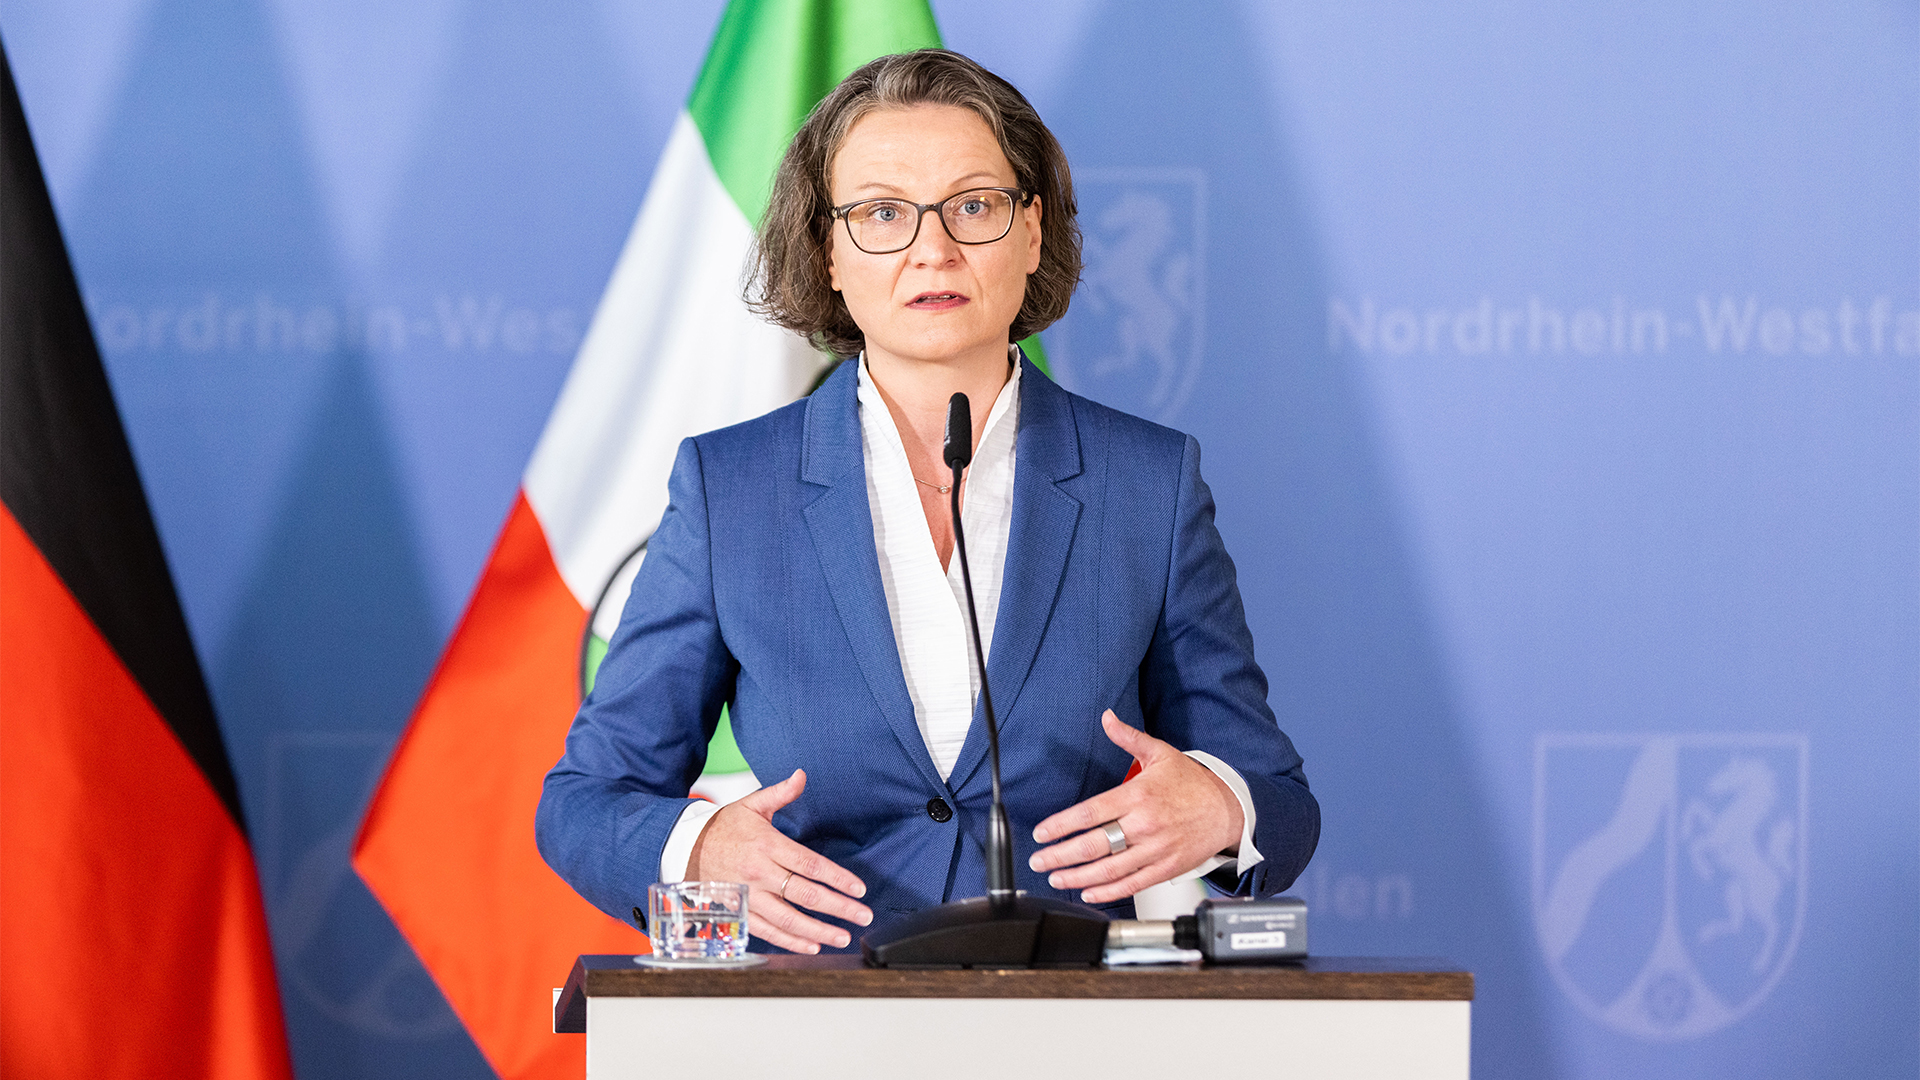 Ina Scharrenbach (CDU), Ministerin für Heimat, Kommunales, Bau und Gleichstellung des Landes Nordrhein-Westfalen, spricht während einer Pressekonferenz.  | dpa